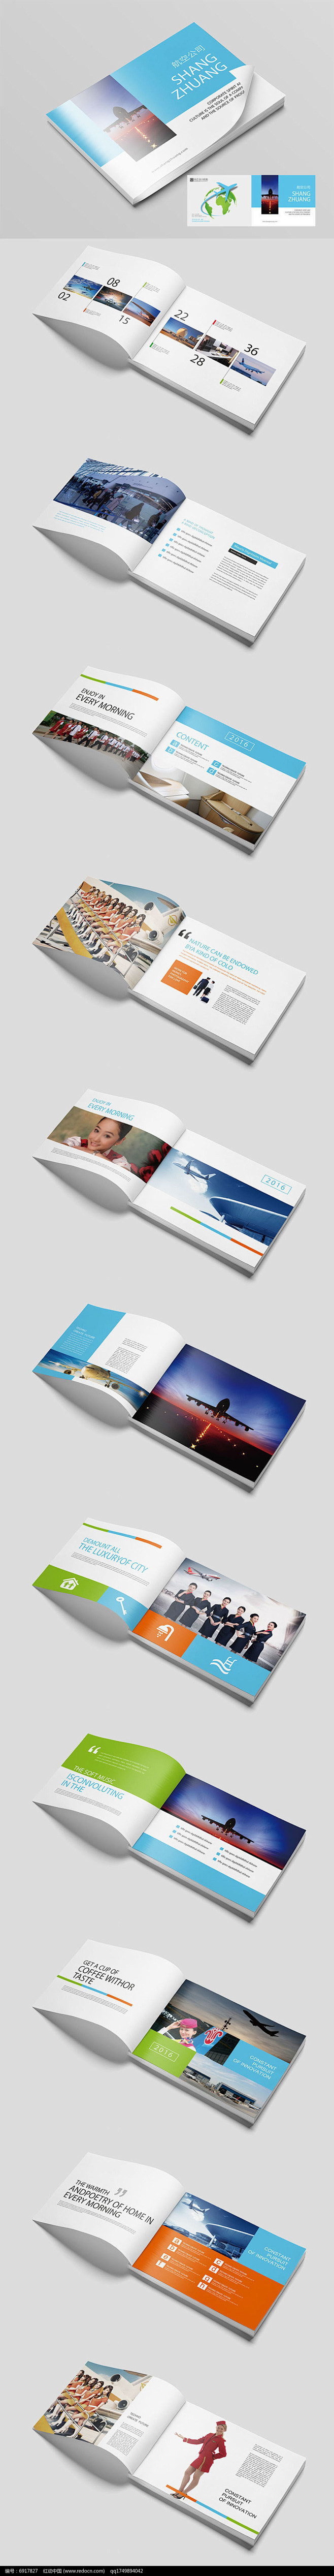 国际航空飞机画册设计AI素材下载_产品画...